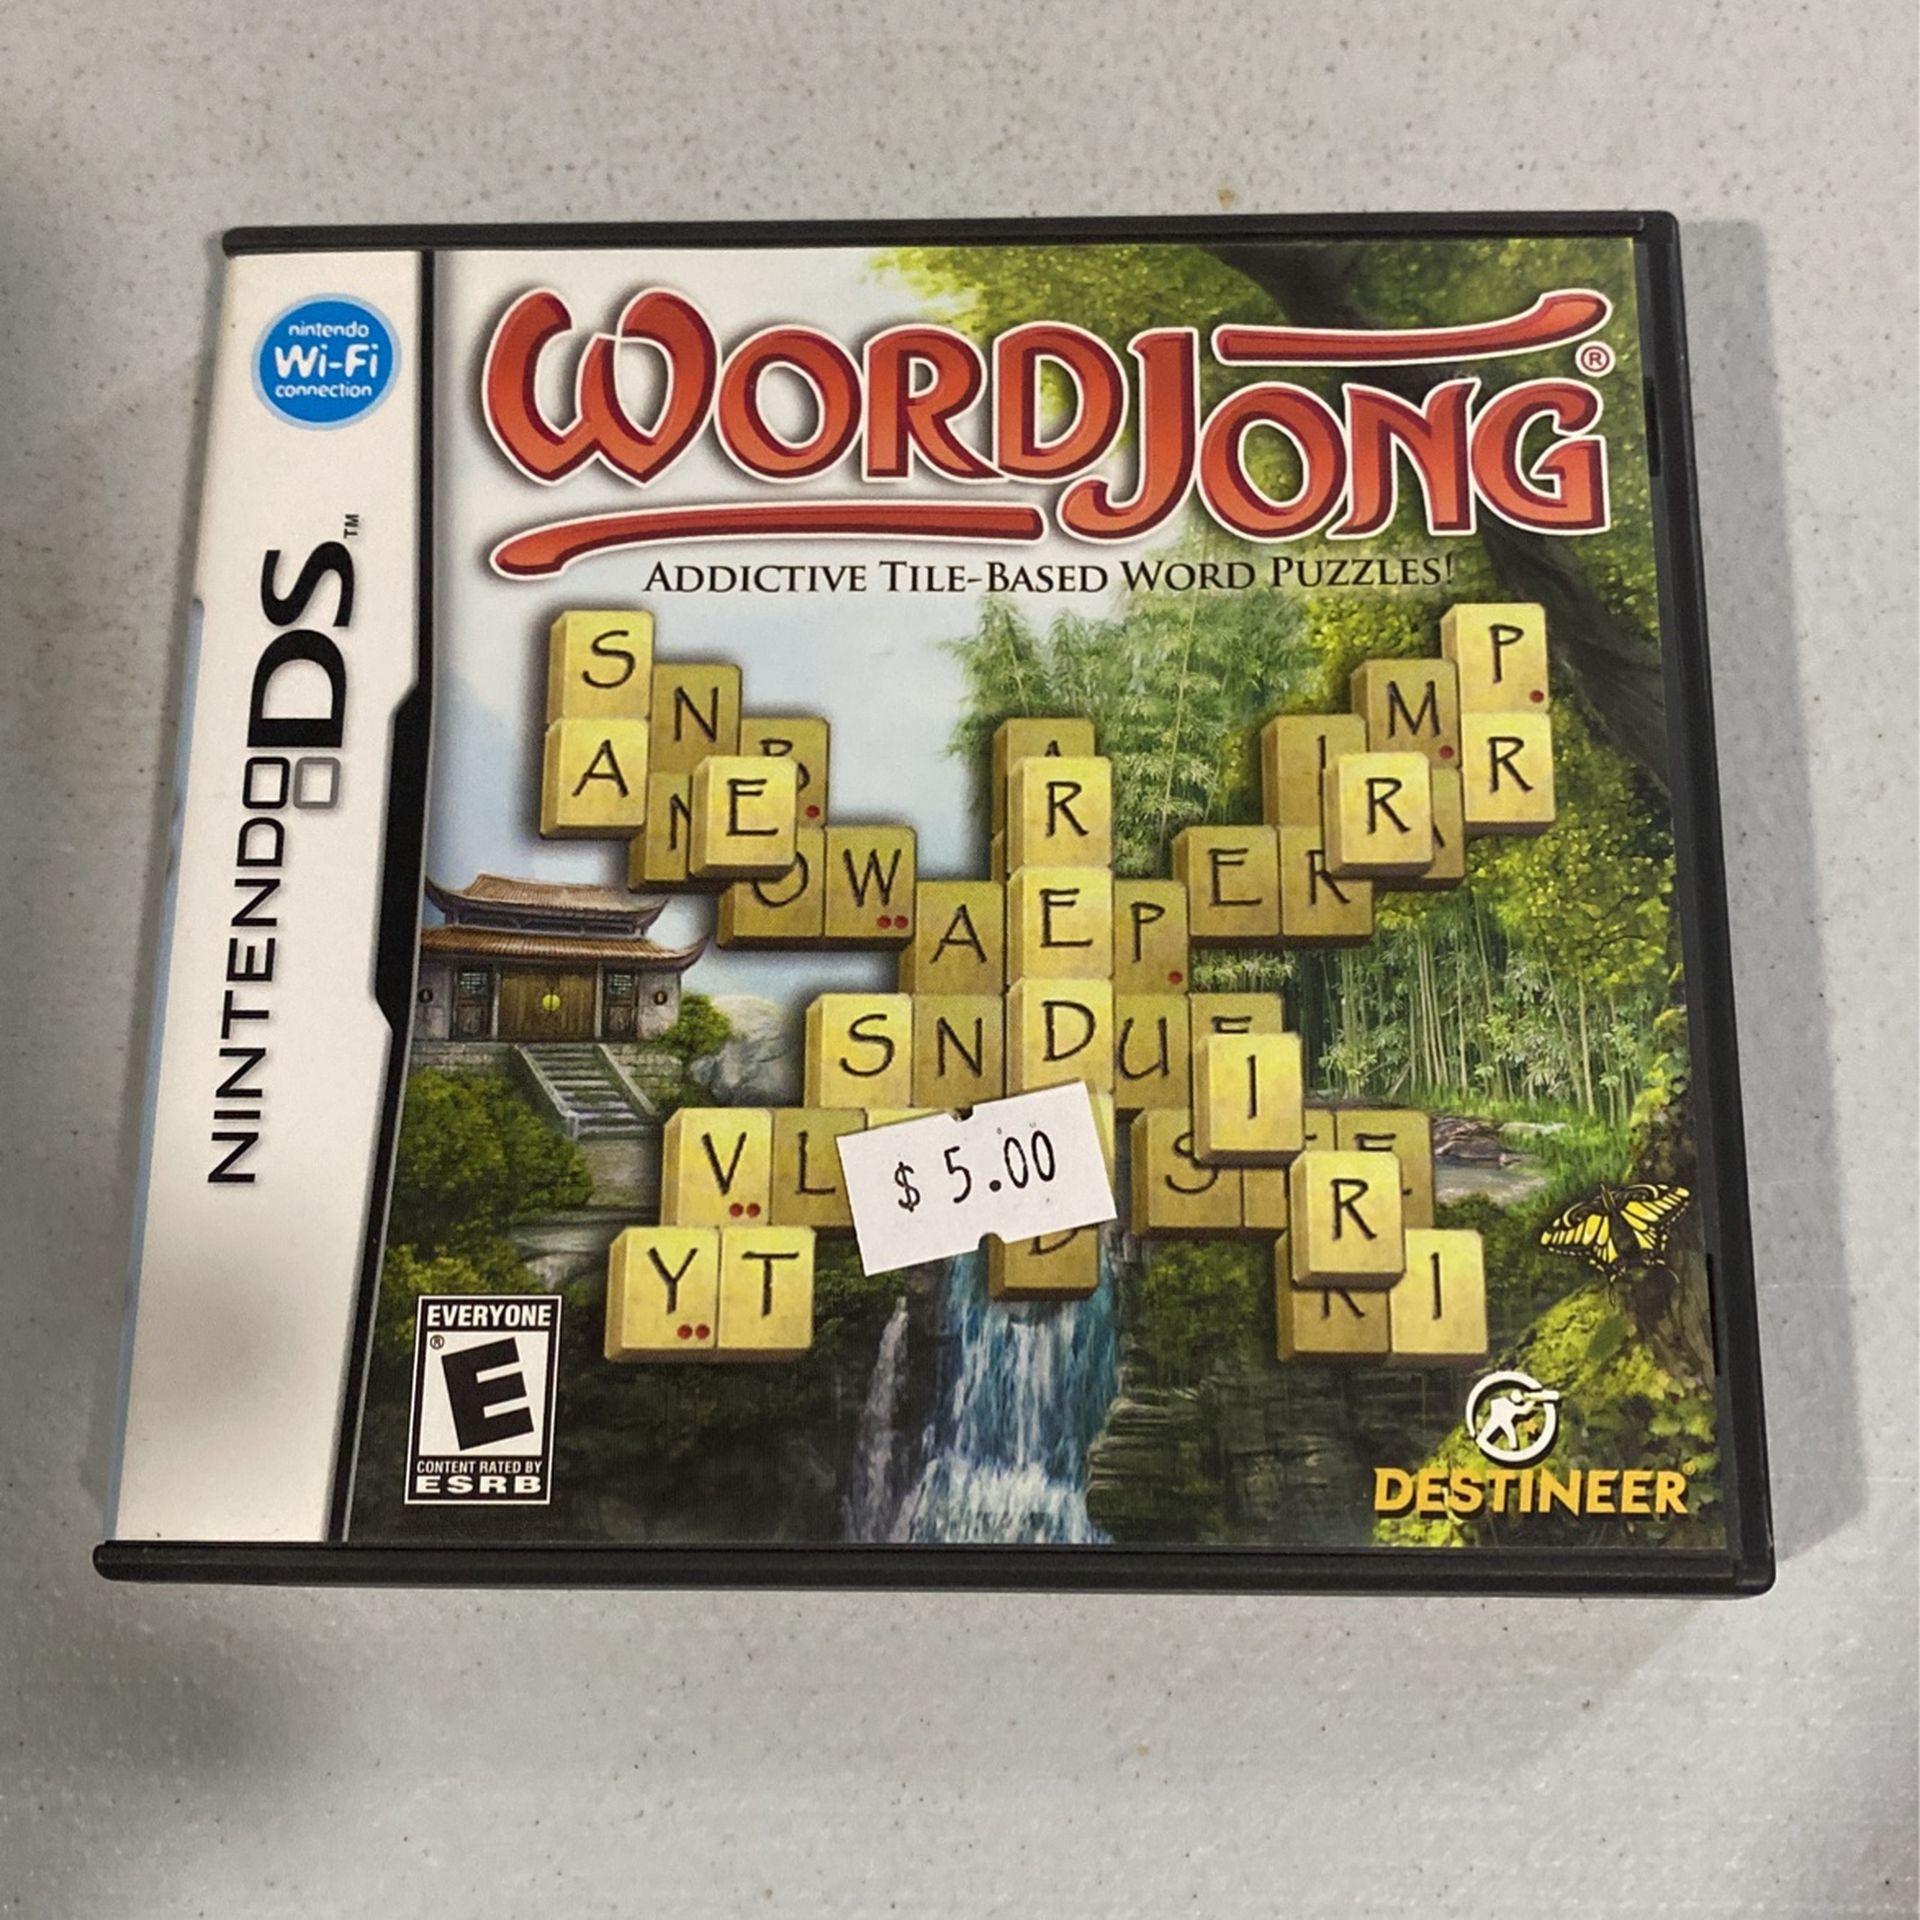 WordJong (Nintendo DS, 2007) 